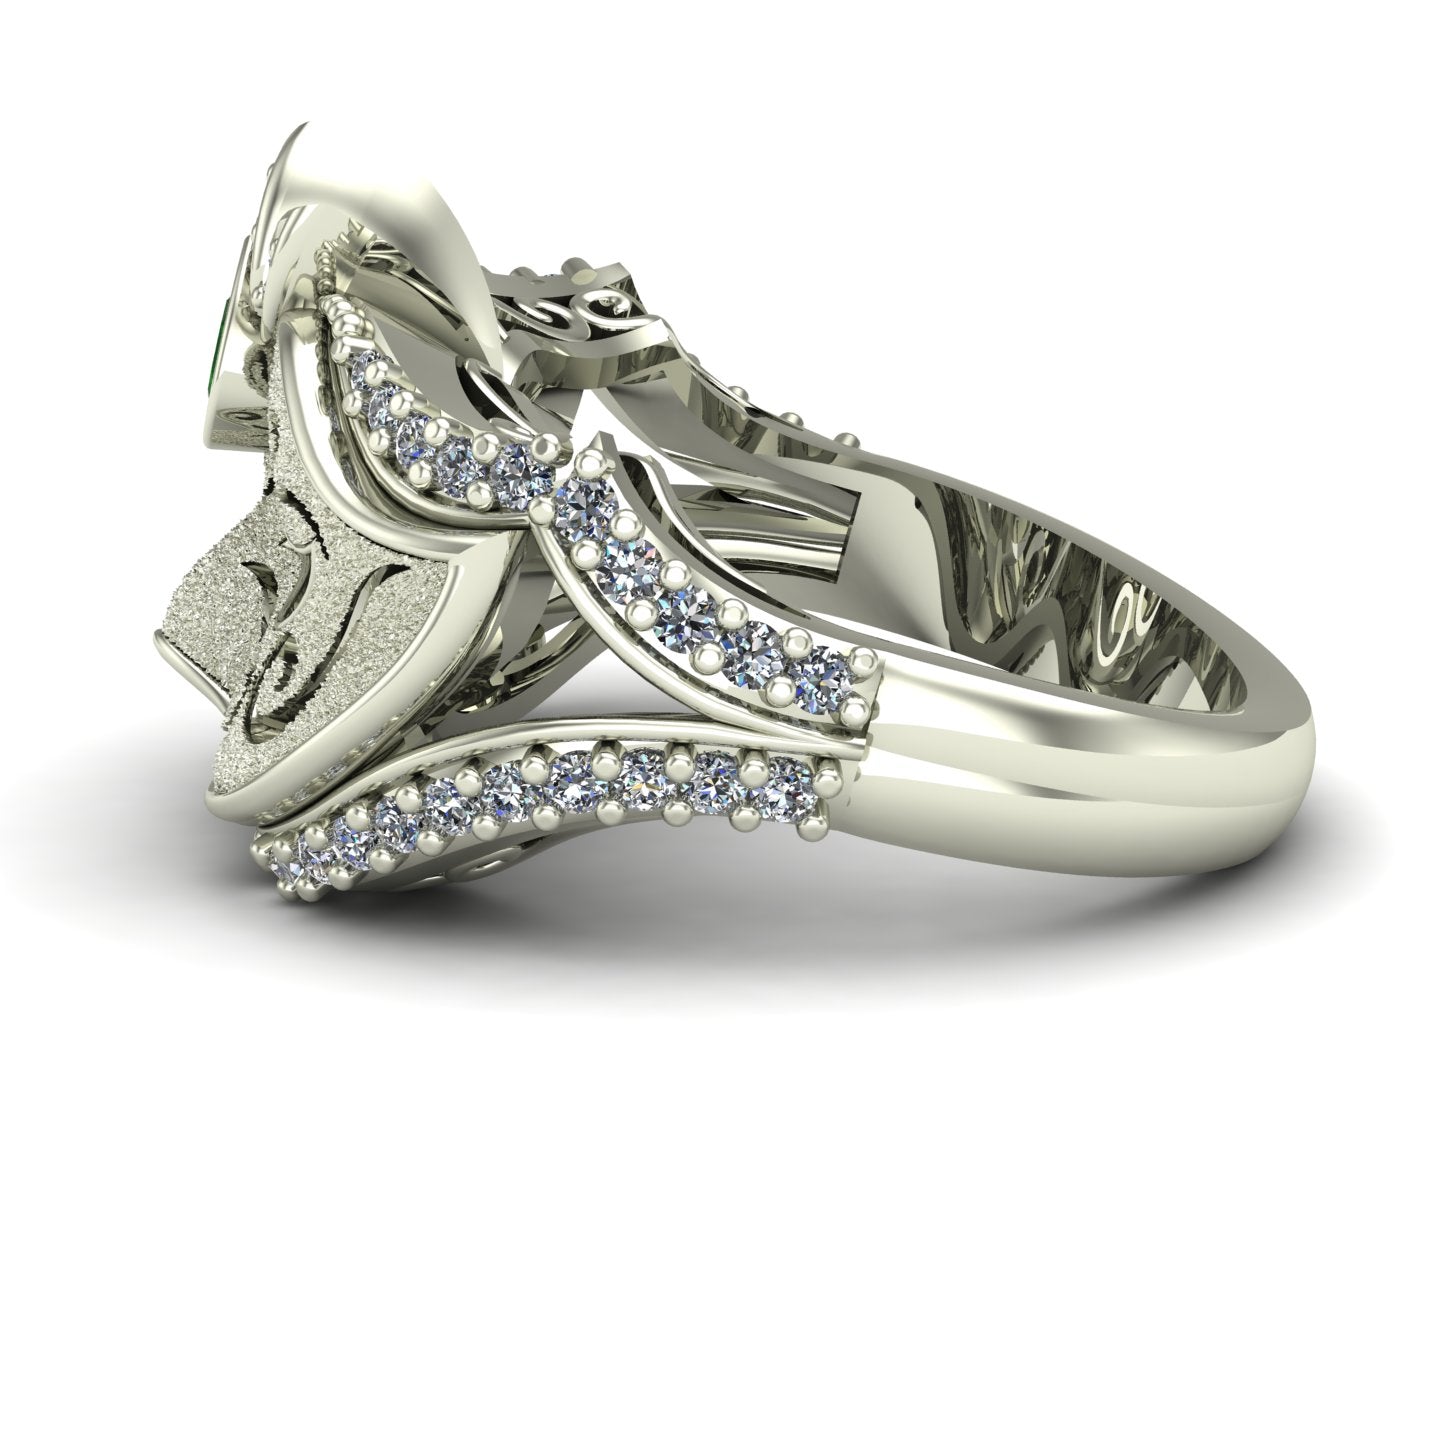 bezel set pear cut tsavorite green garnet and diamond venetian carnival mask ring in 14k white gold - Charles Babb Designs - side view